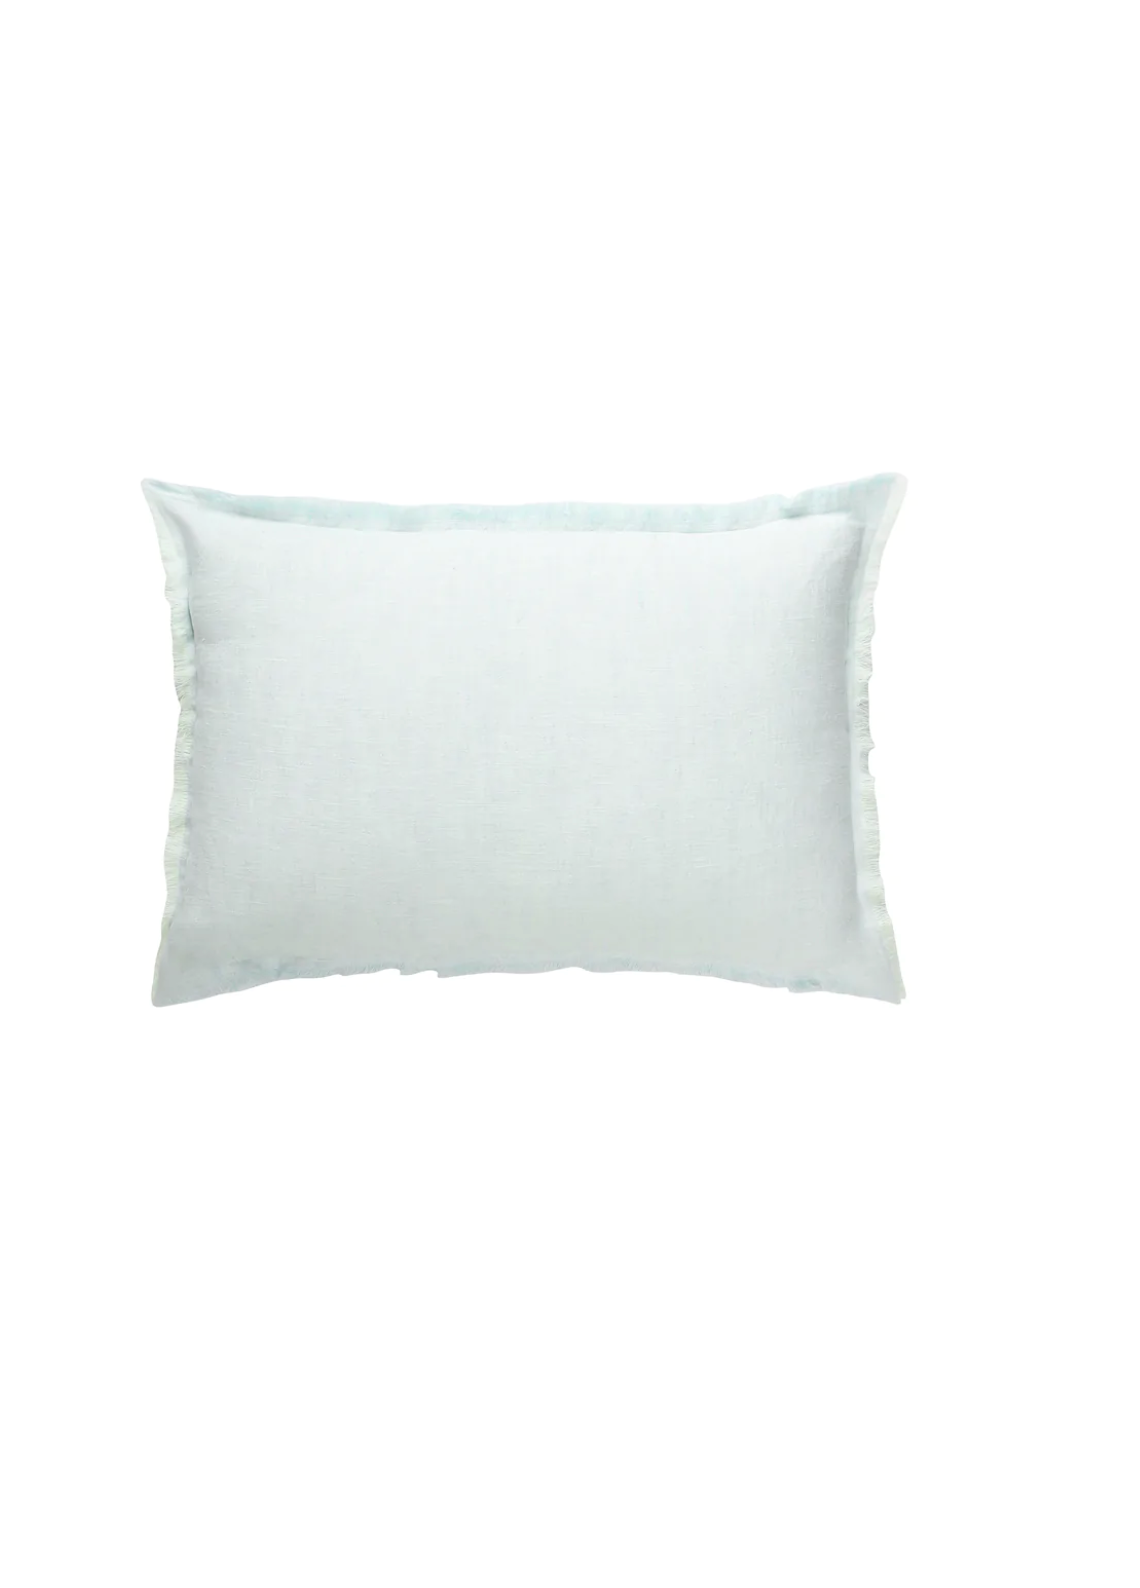 Light Aqua Linen Pillows